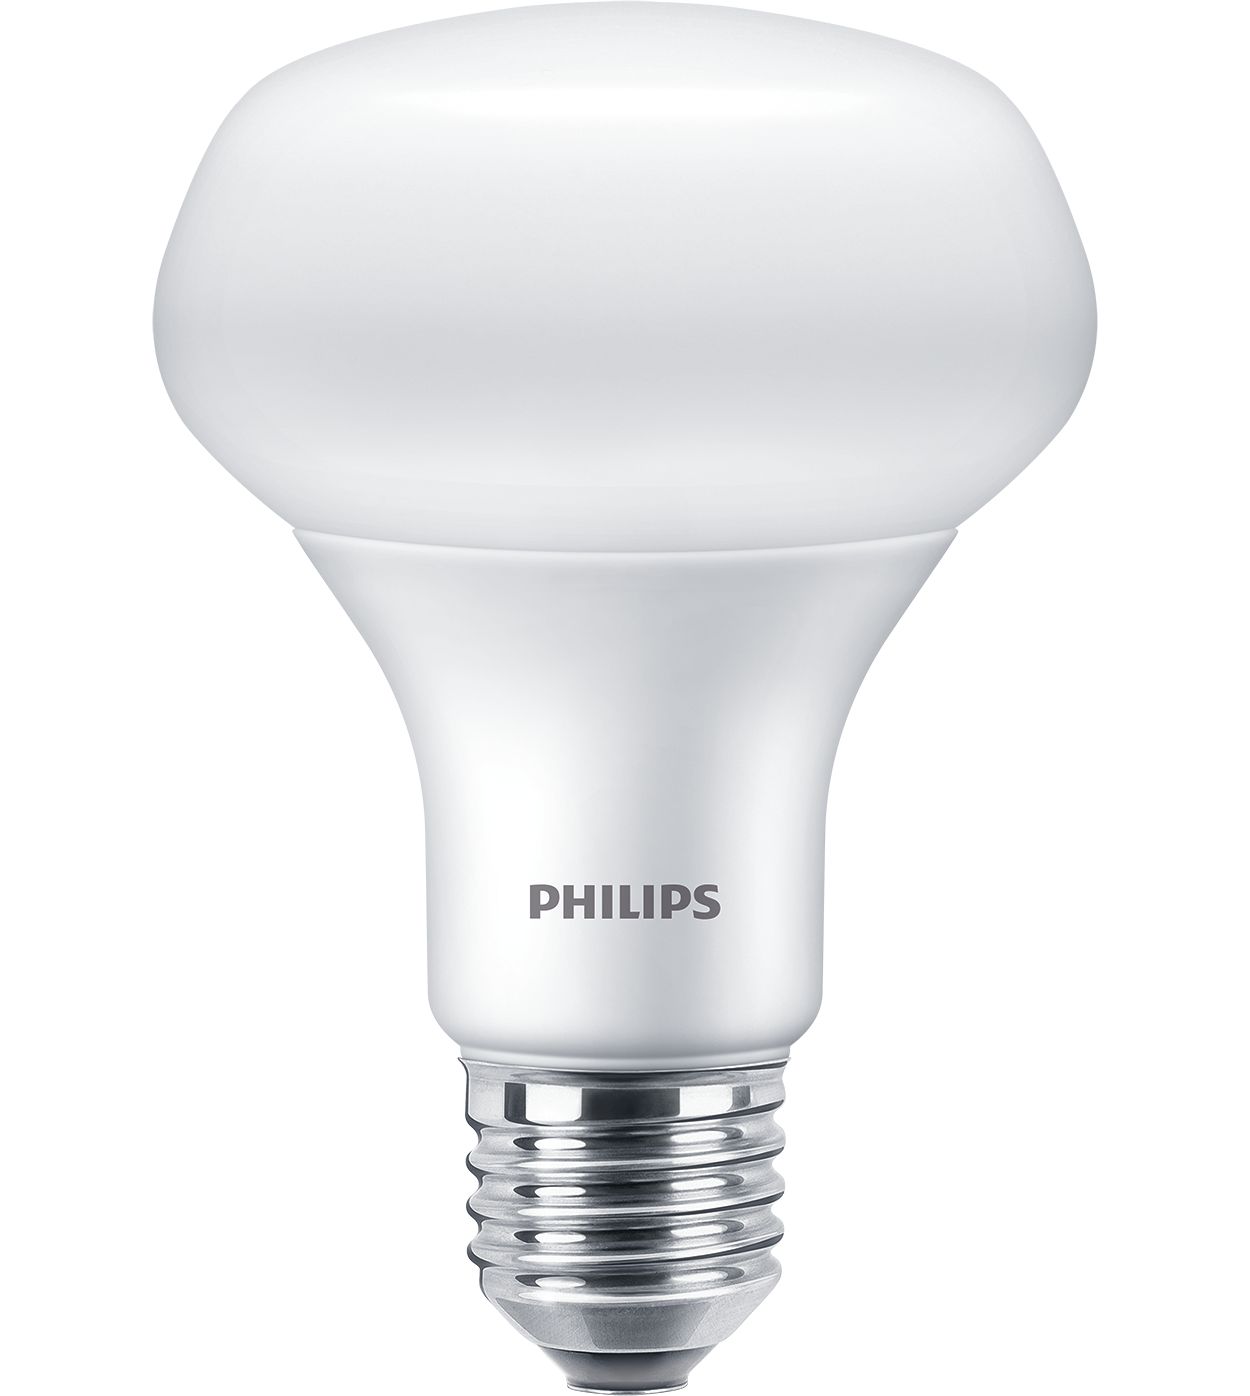 Mijlpaal Veel gevaarlijke situaties voelen ESS LEDspot 10W 1150lm E27 R80 827 | 929002966187 | Philips lighting